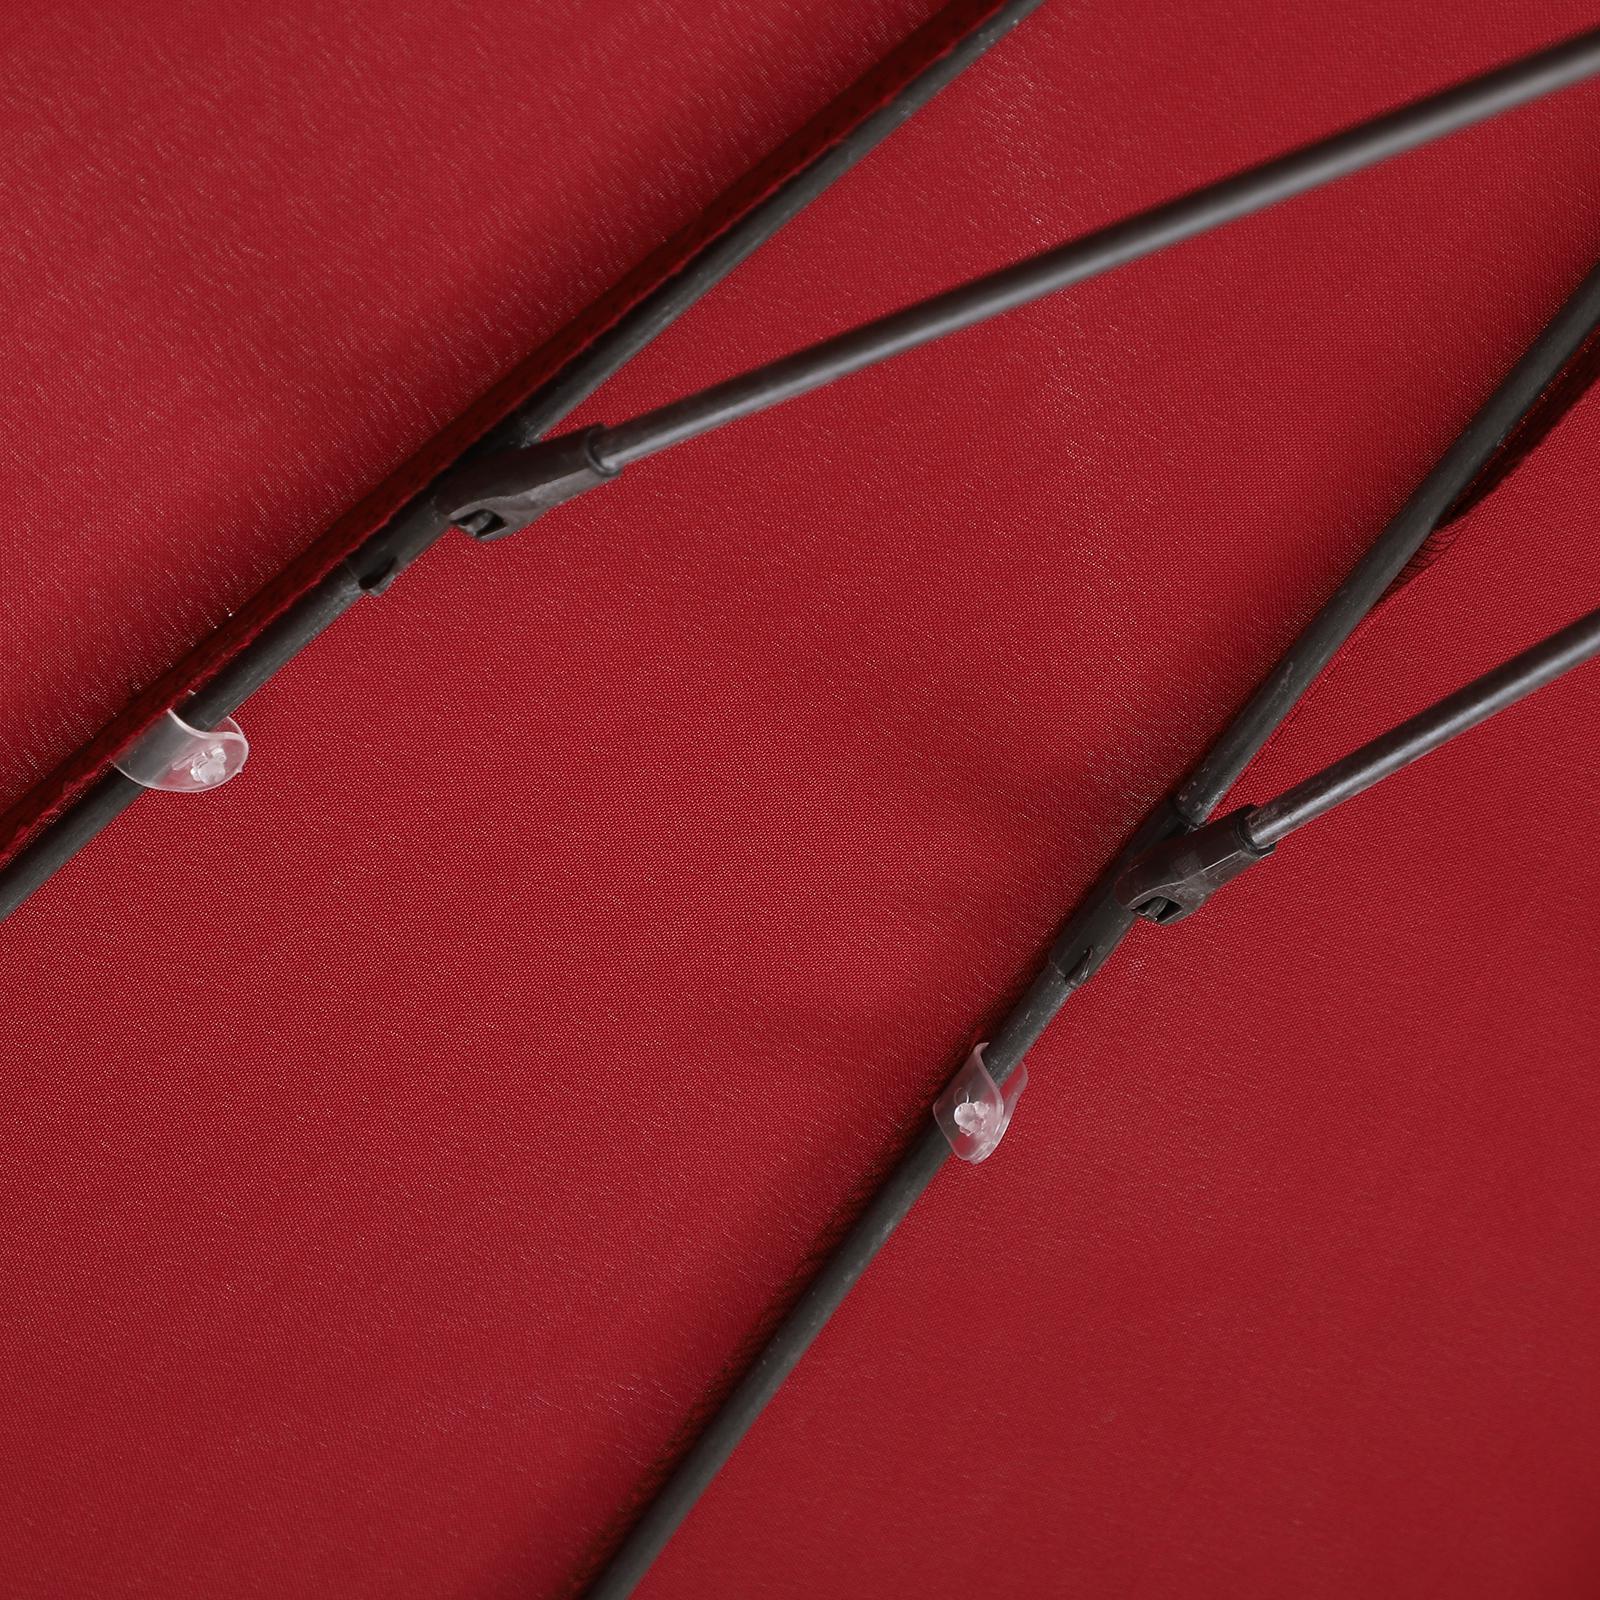 Parasol inclinable rond avec manivelle aluminium fibre de verre polyester diamètre 2,60 m coloris rouge